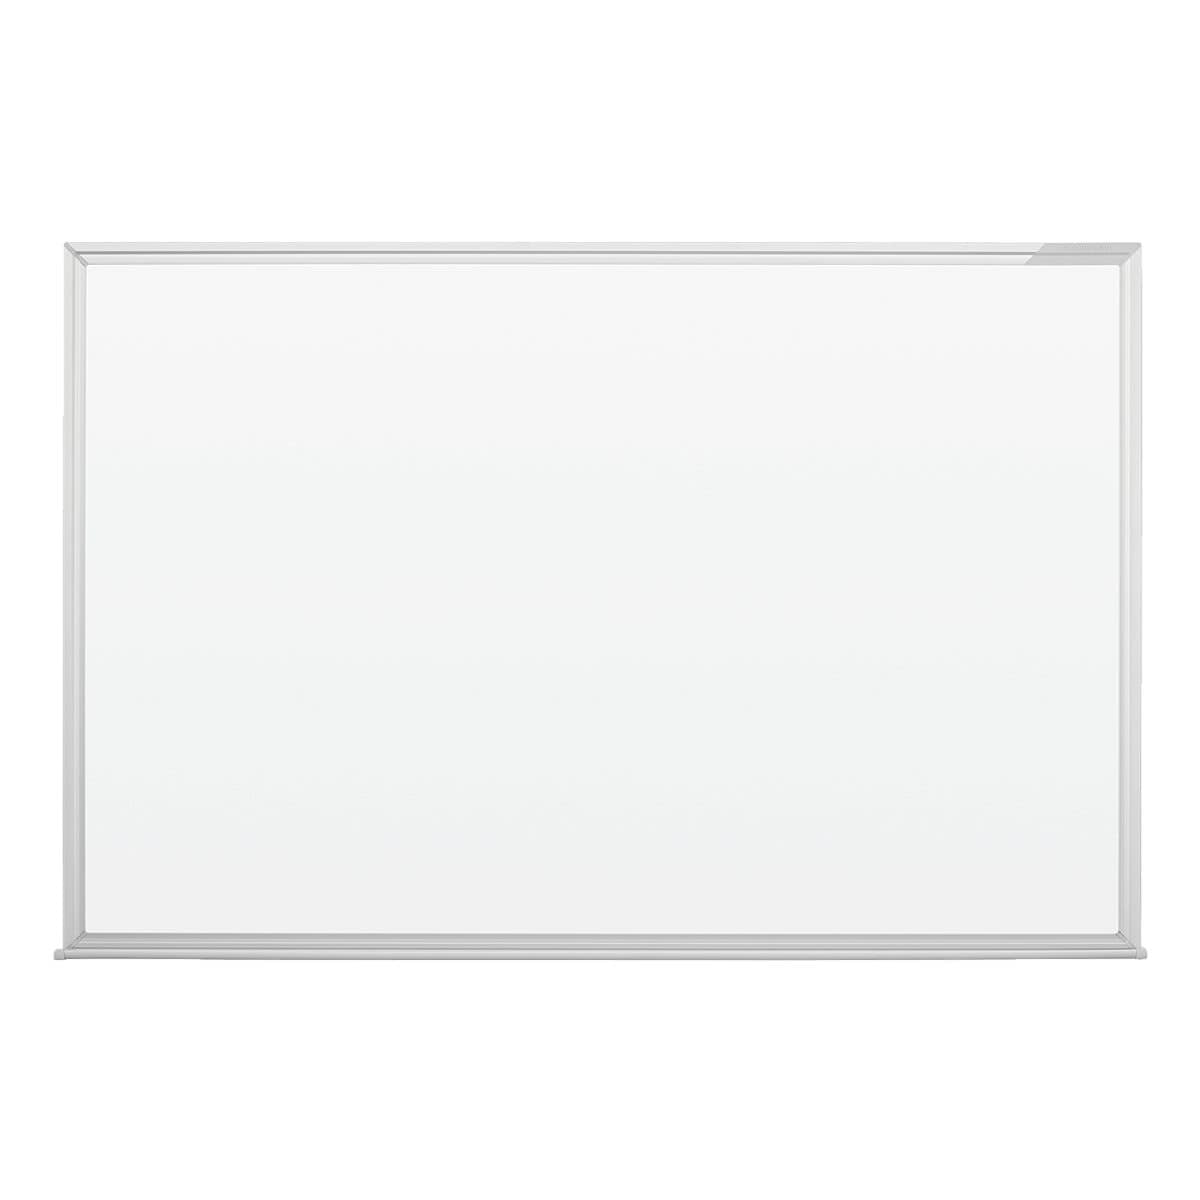 magnetoplan Whiteboard 1240688 lackiert, 180x120 cm